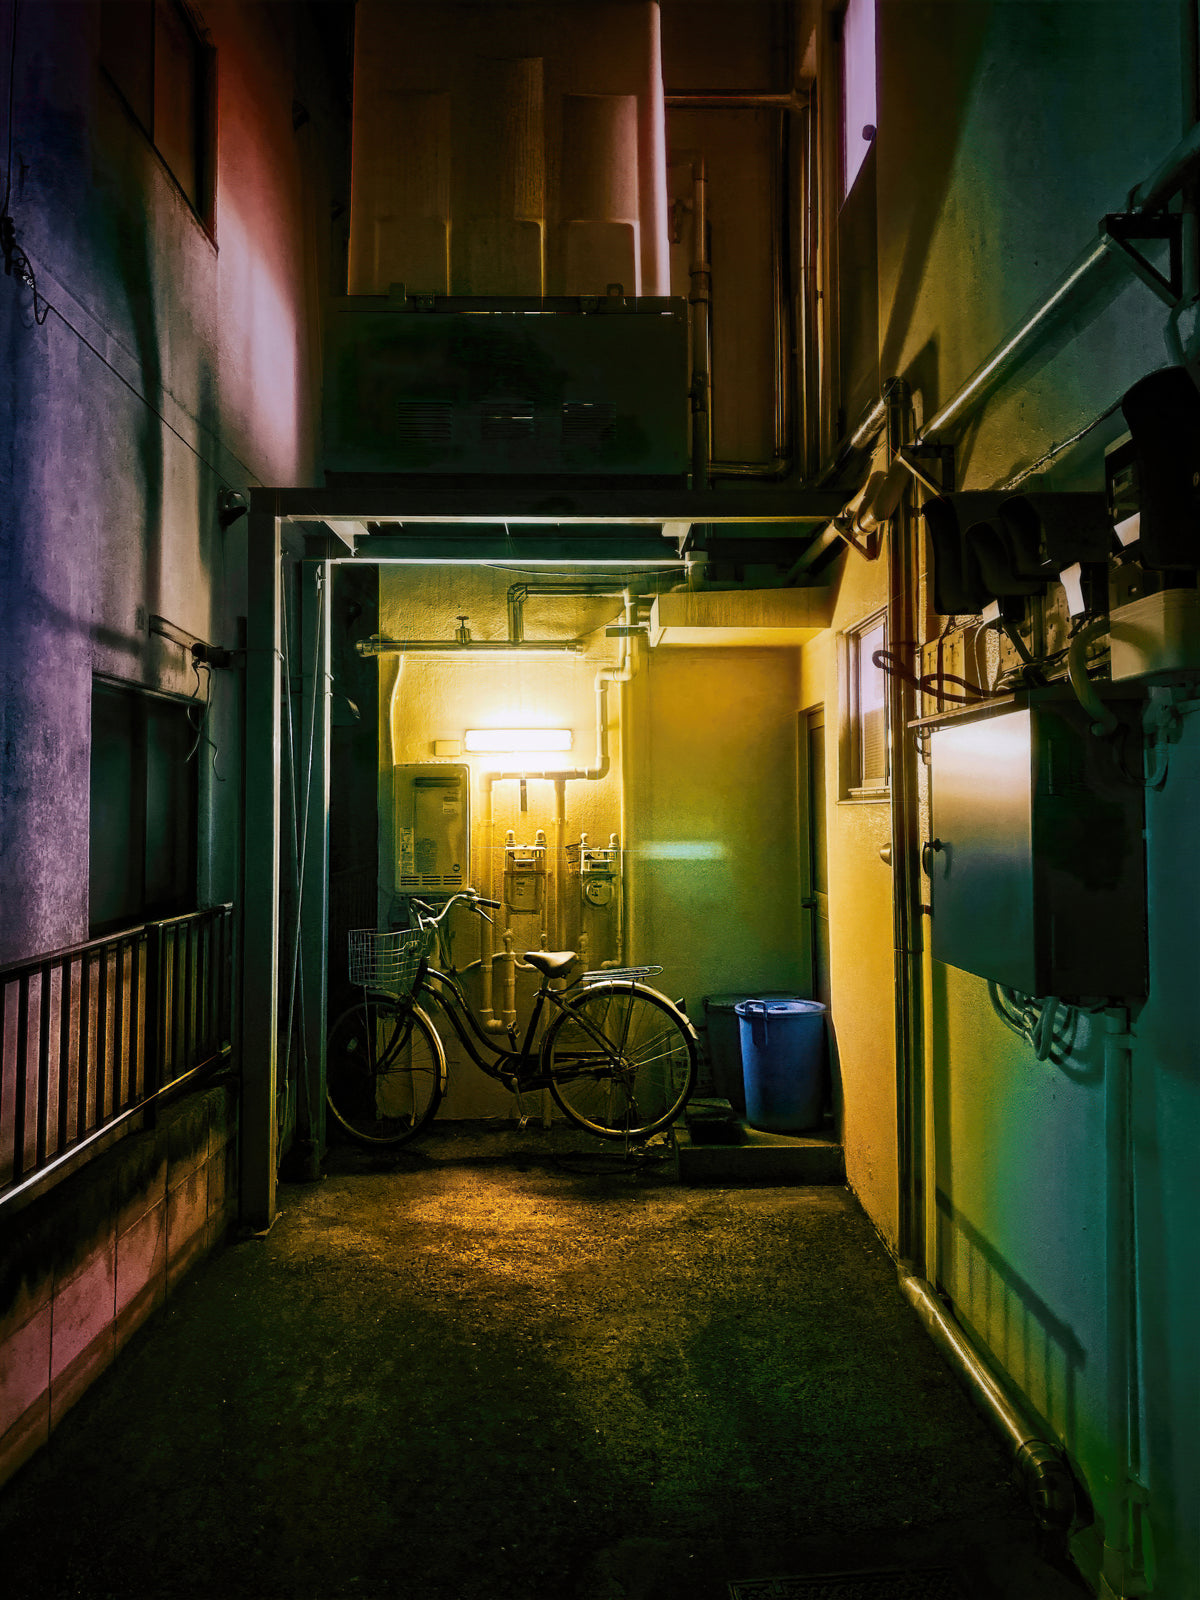 自行车停在被灯光照亮的小巷旁